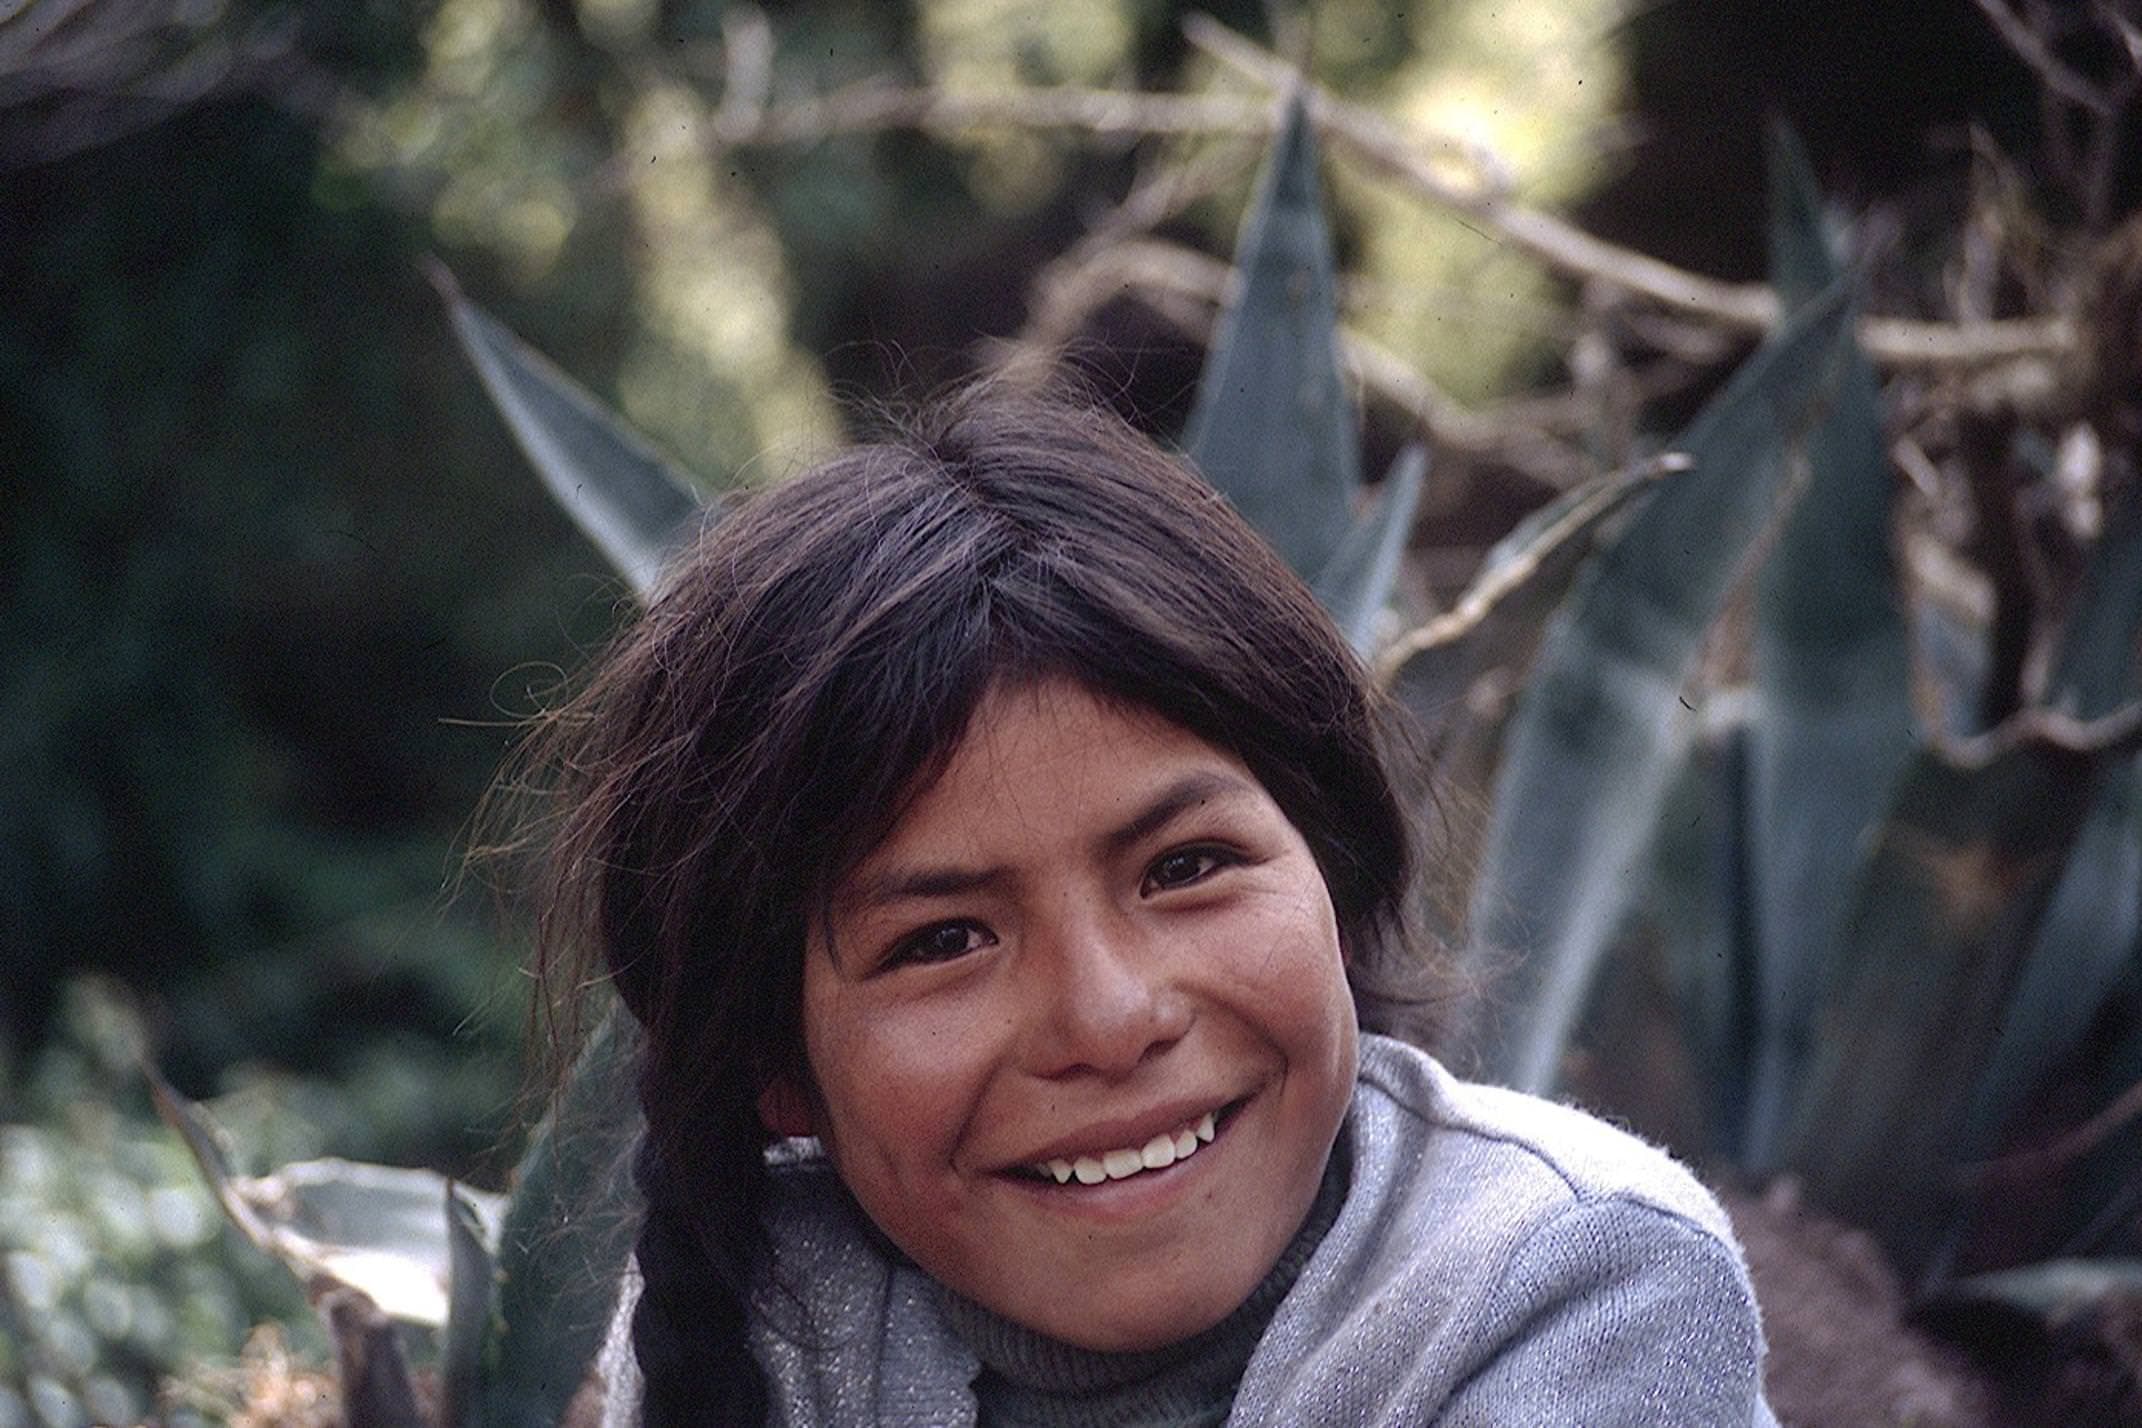 Peru amazon girl smiling